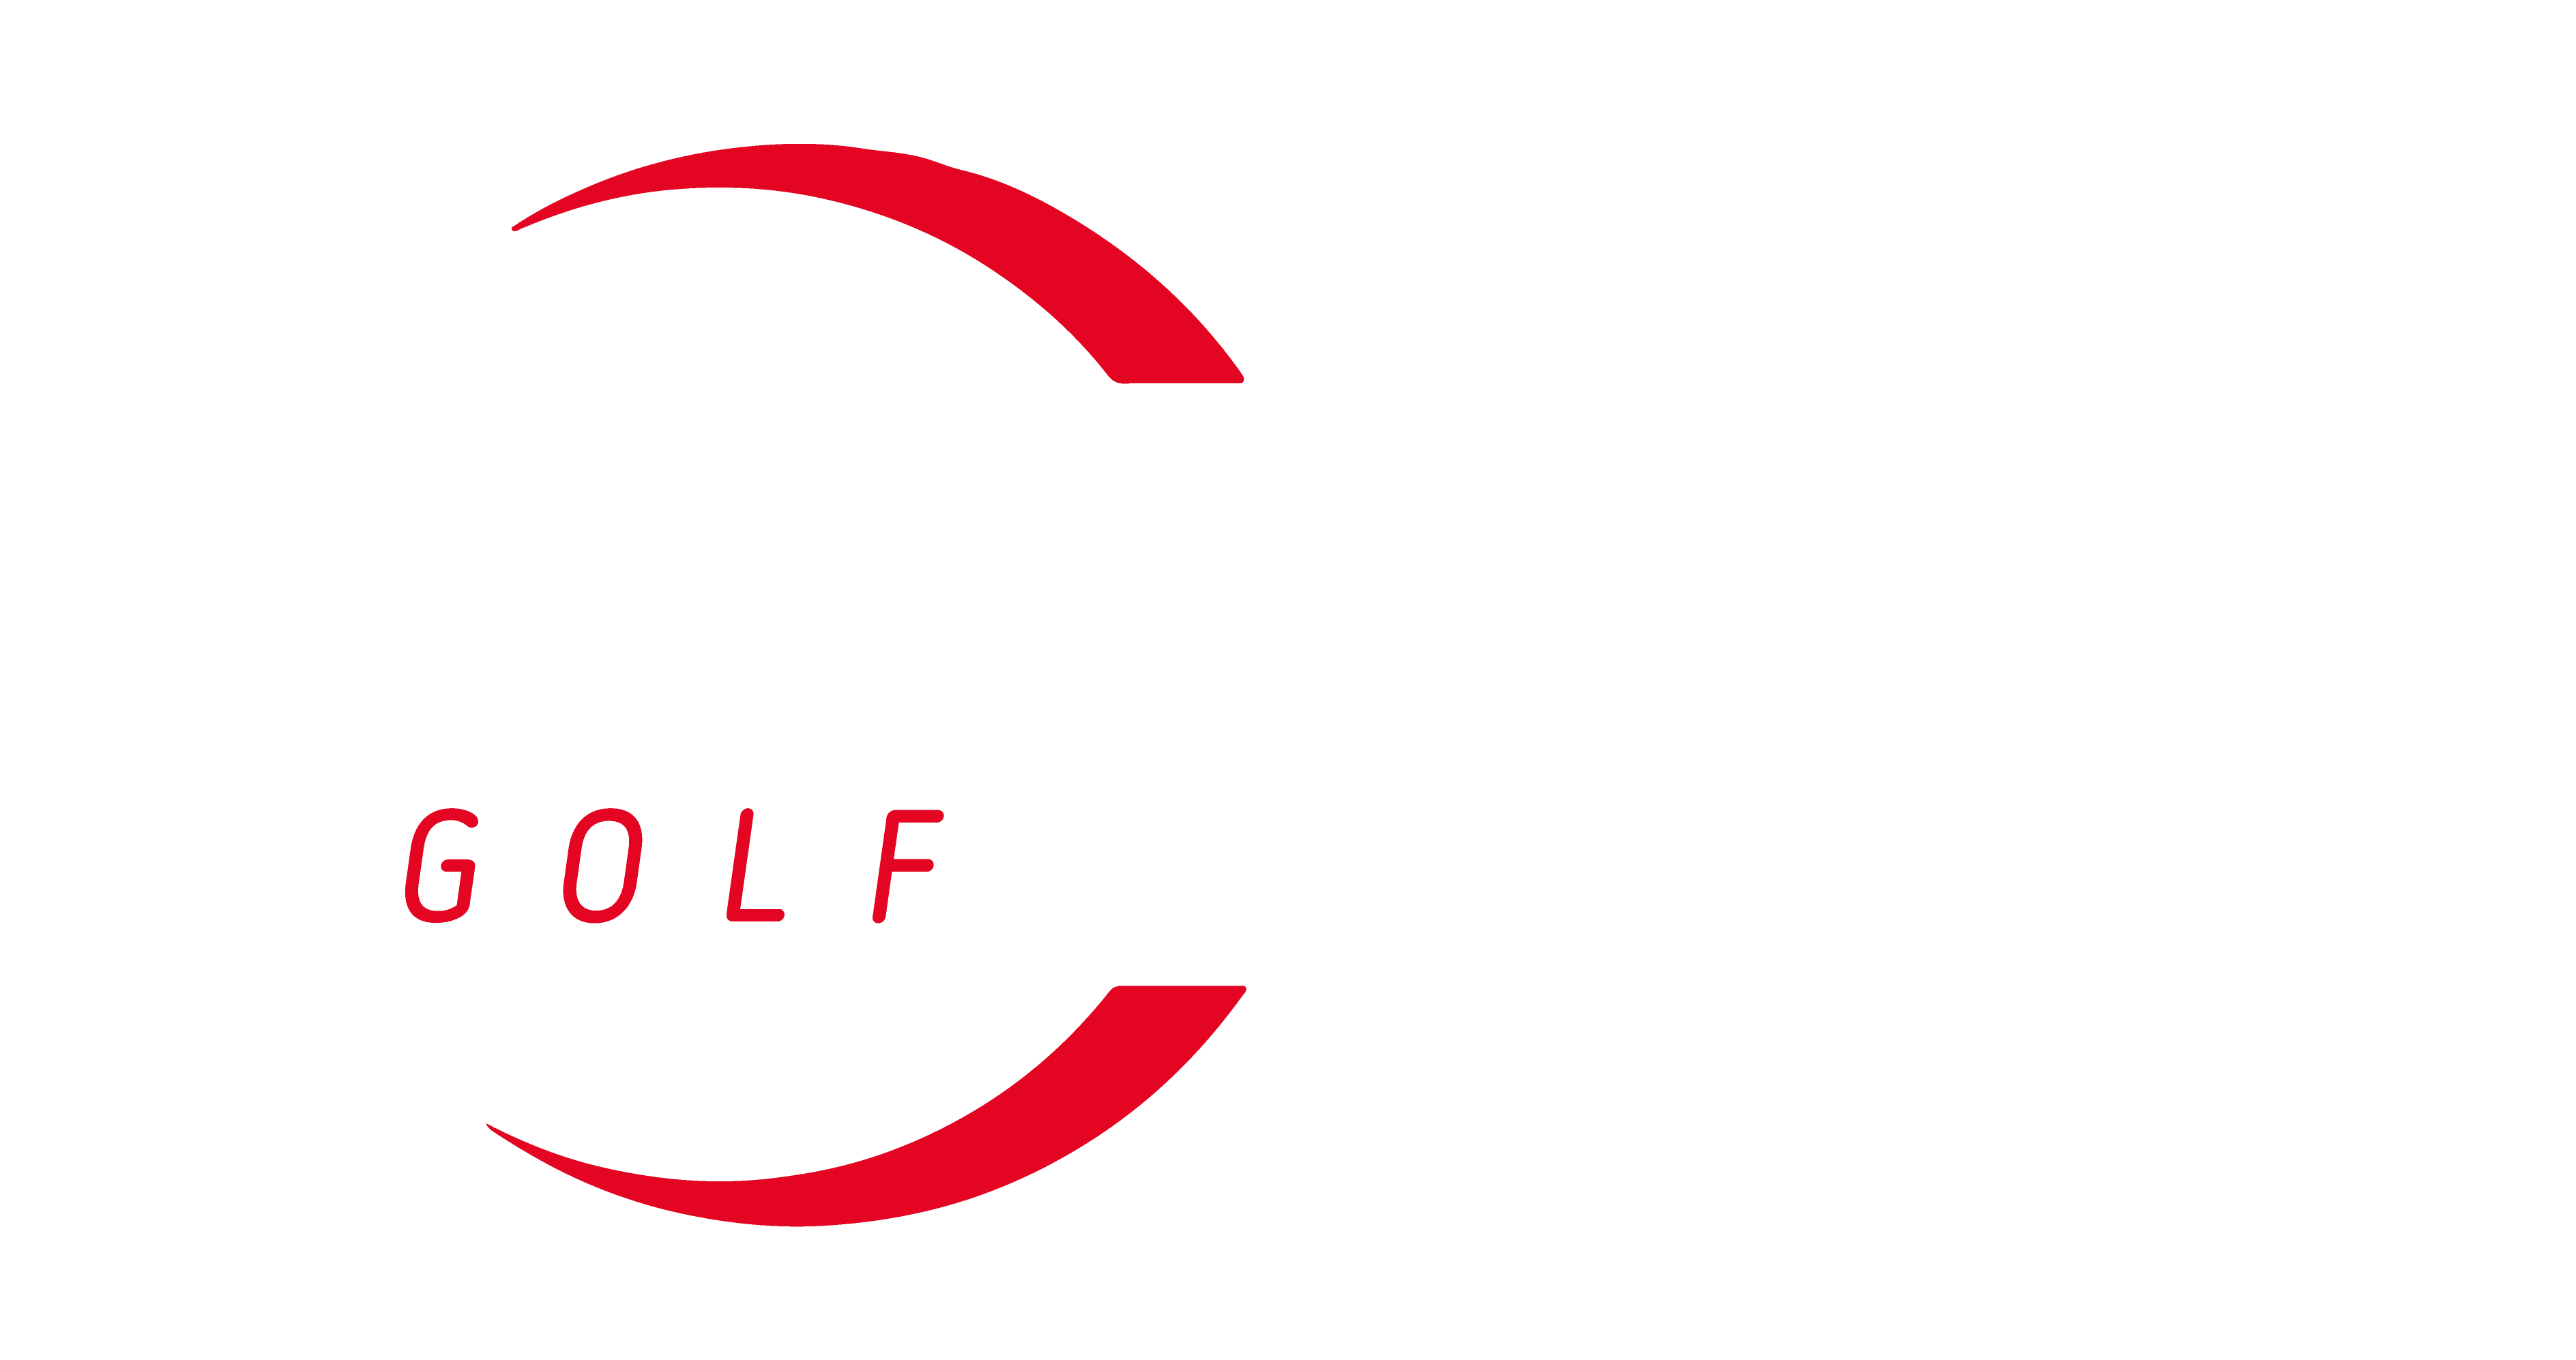 full size luke collins logo white on red